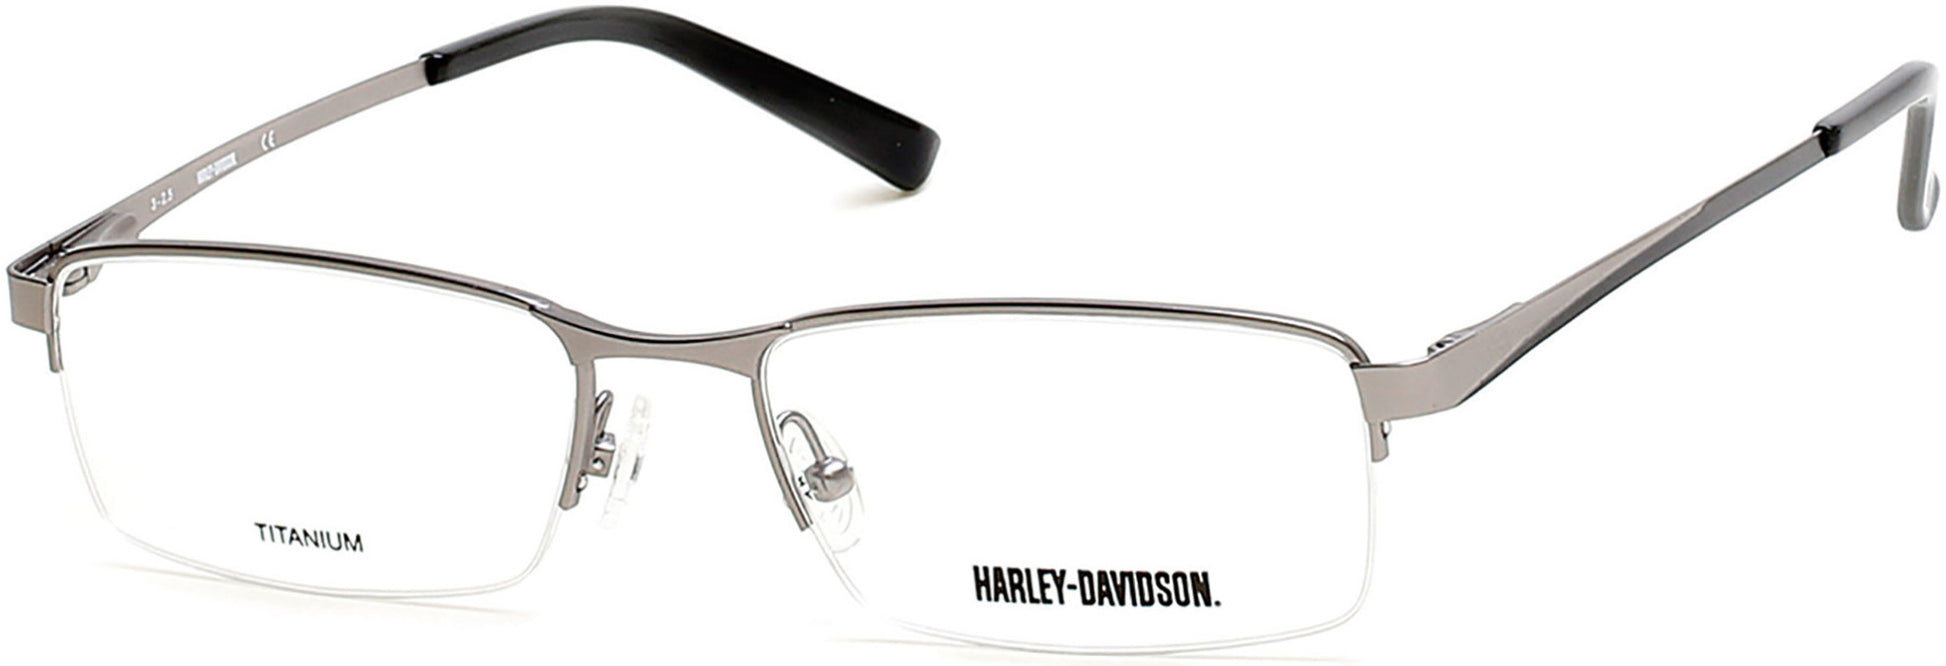 Harley-Davidson HD0748 Rectangular Eyeglasses 009-009 - Matte Gunmetal